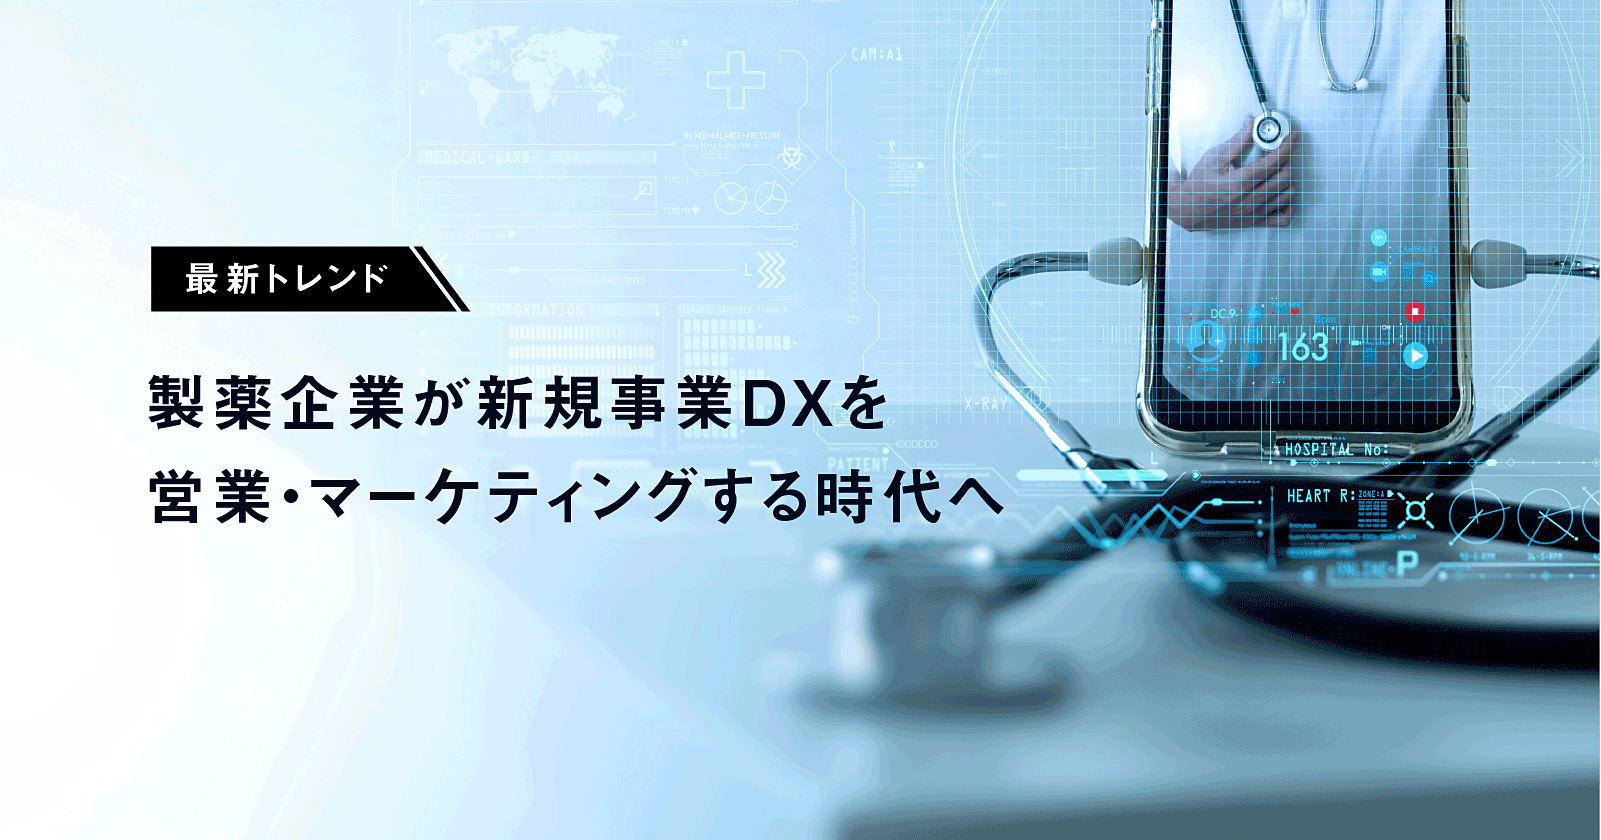 最新トレンドまとめ｜製薬企業の営業・マーケティング新規事業DX事例